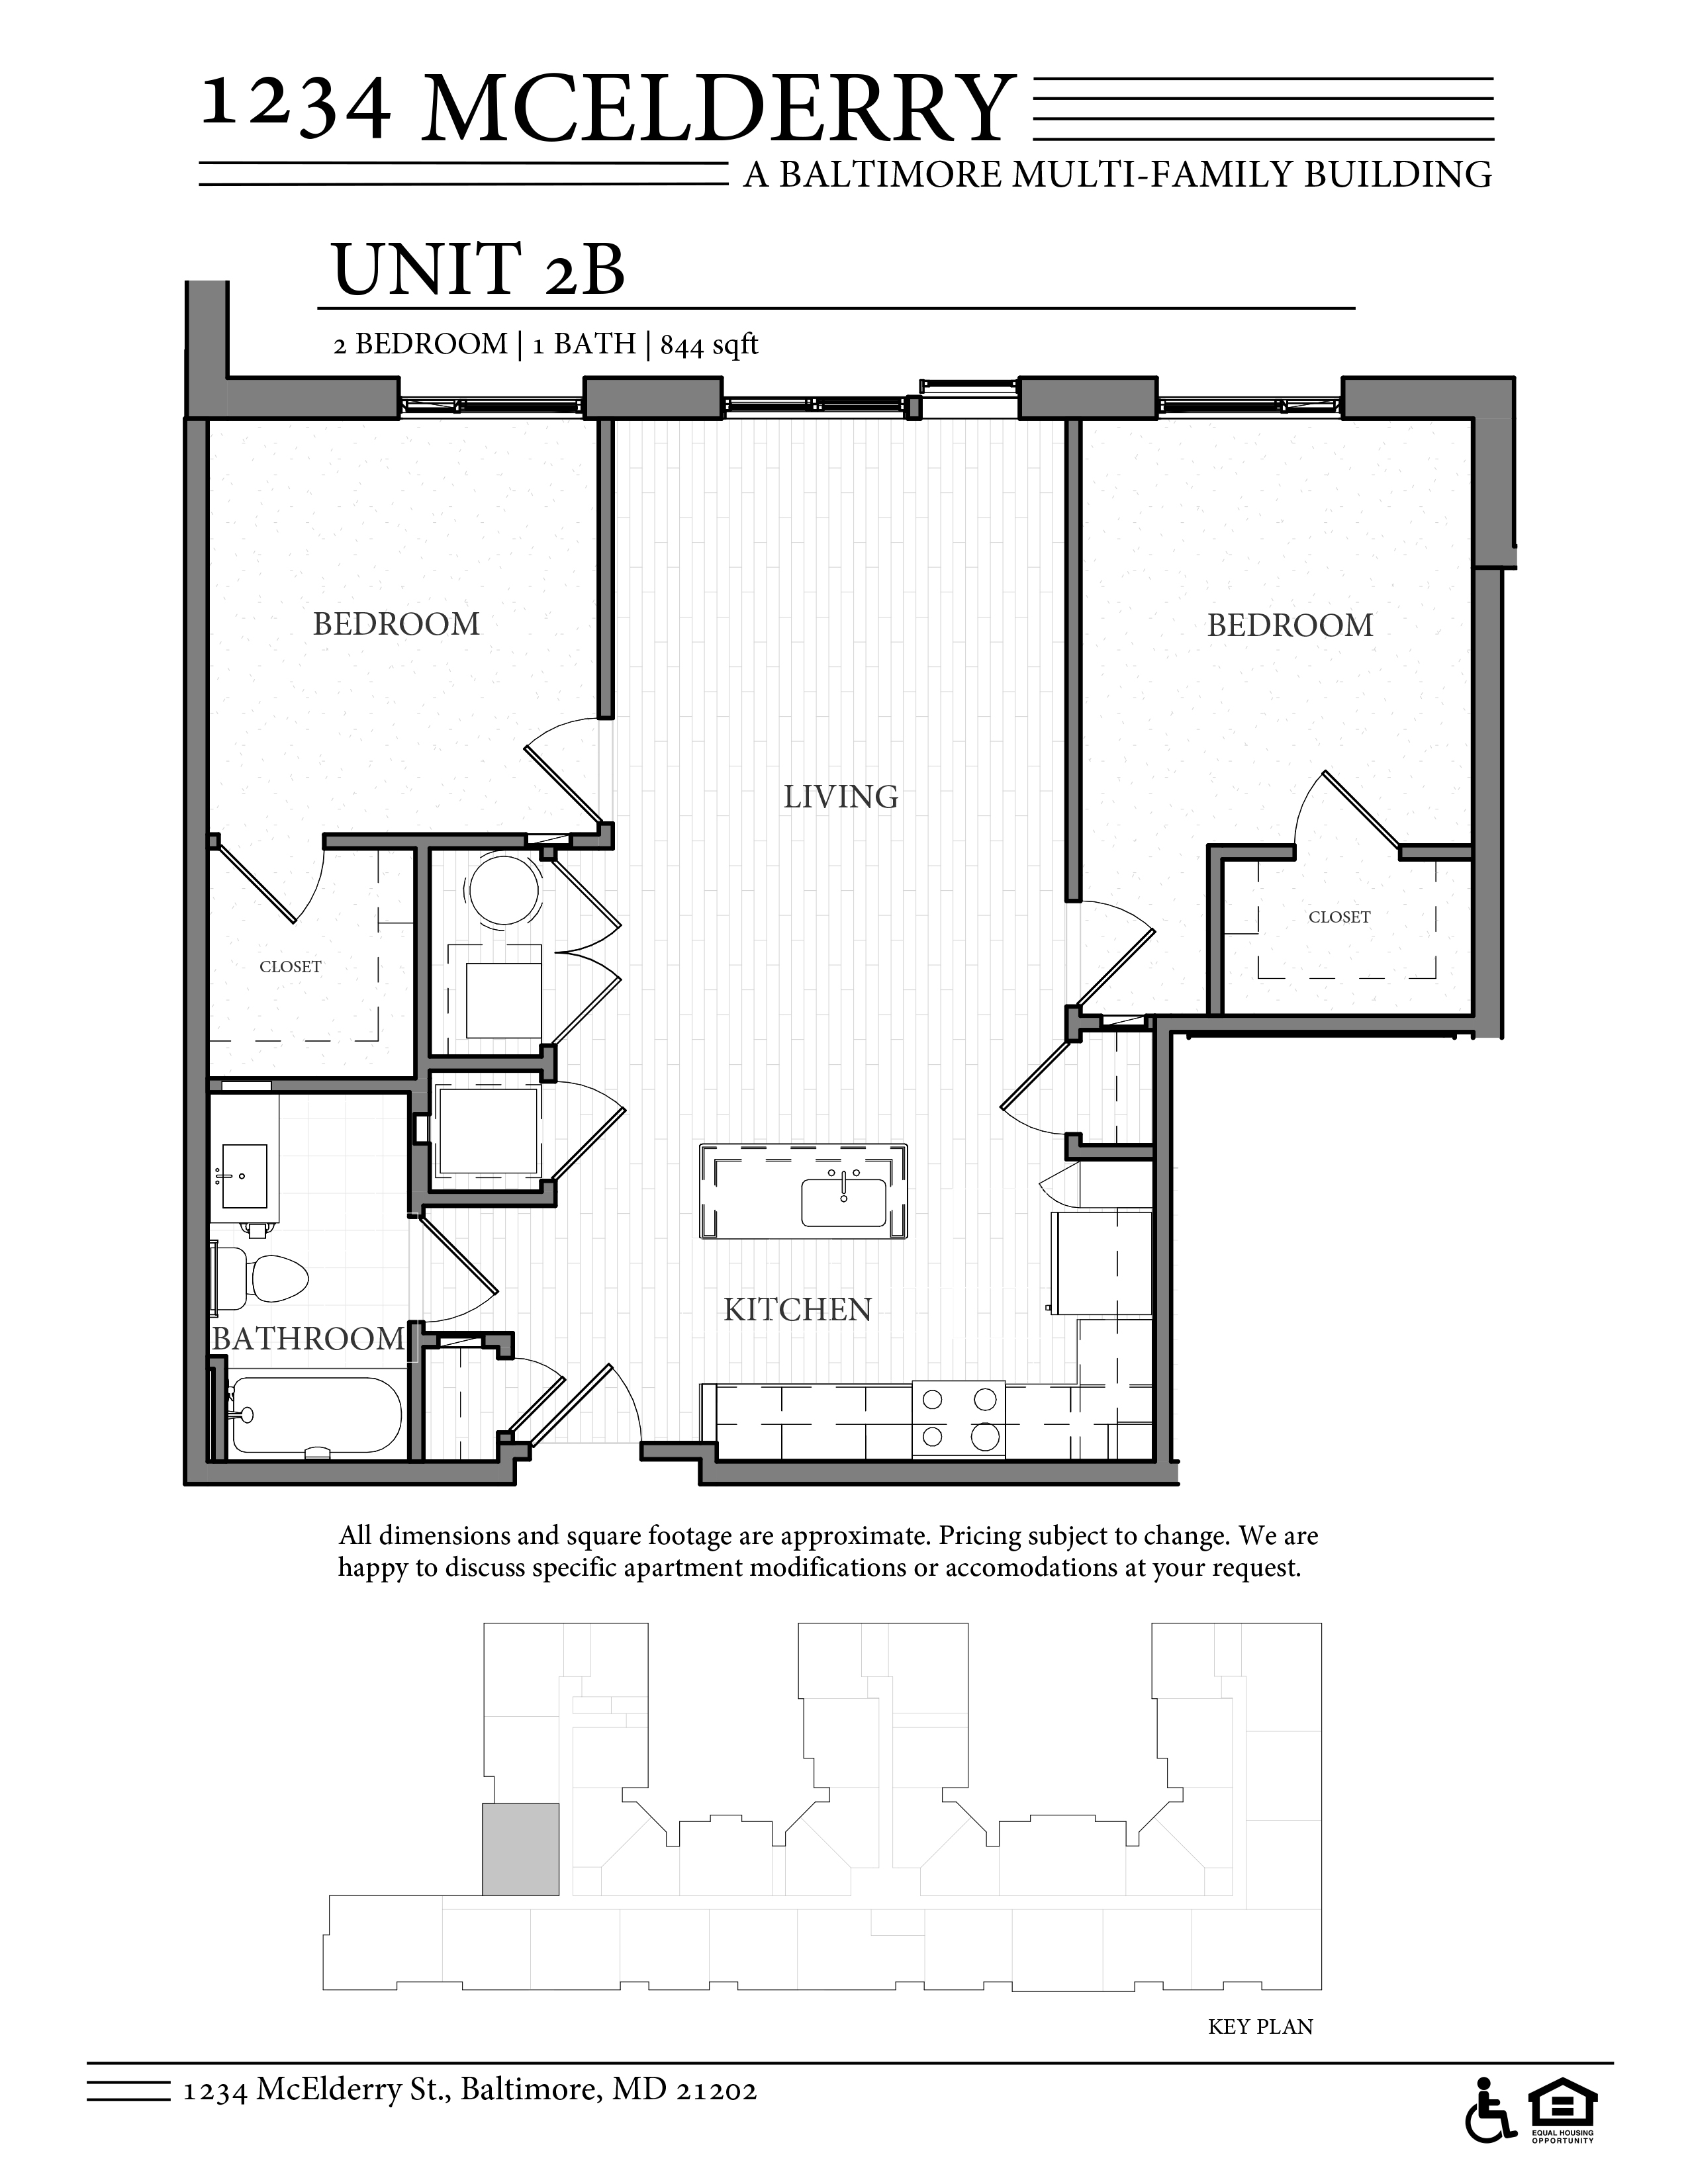 1234 McElderry Floor Plan 2 Bedroom Columbus Property